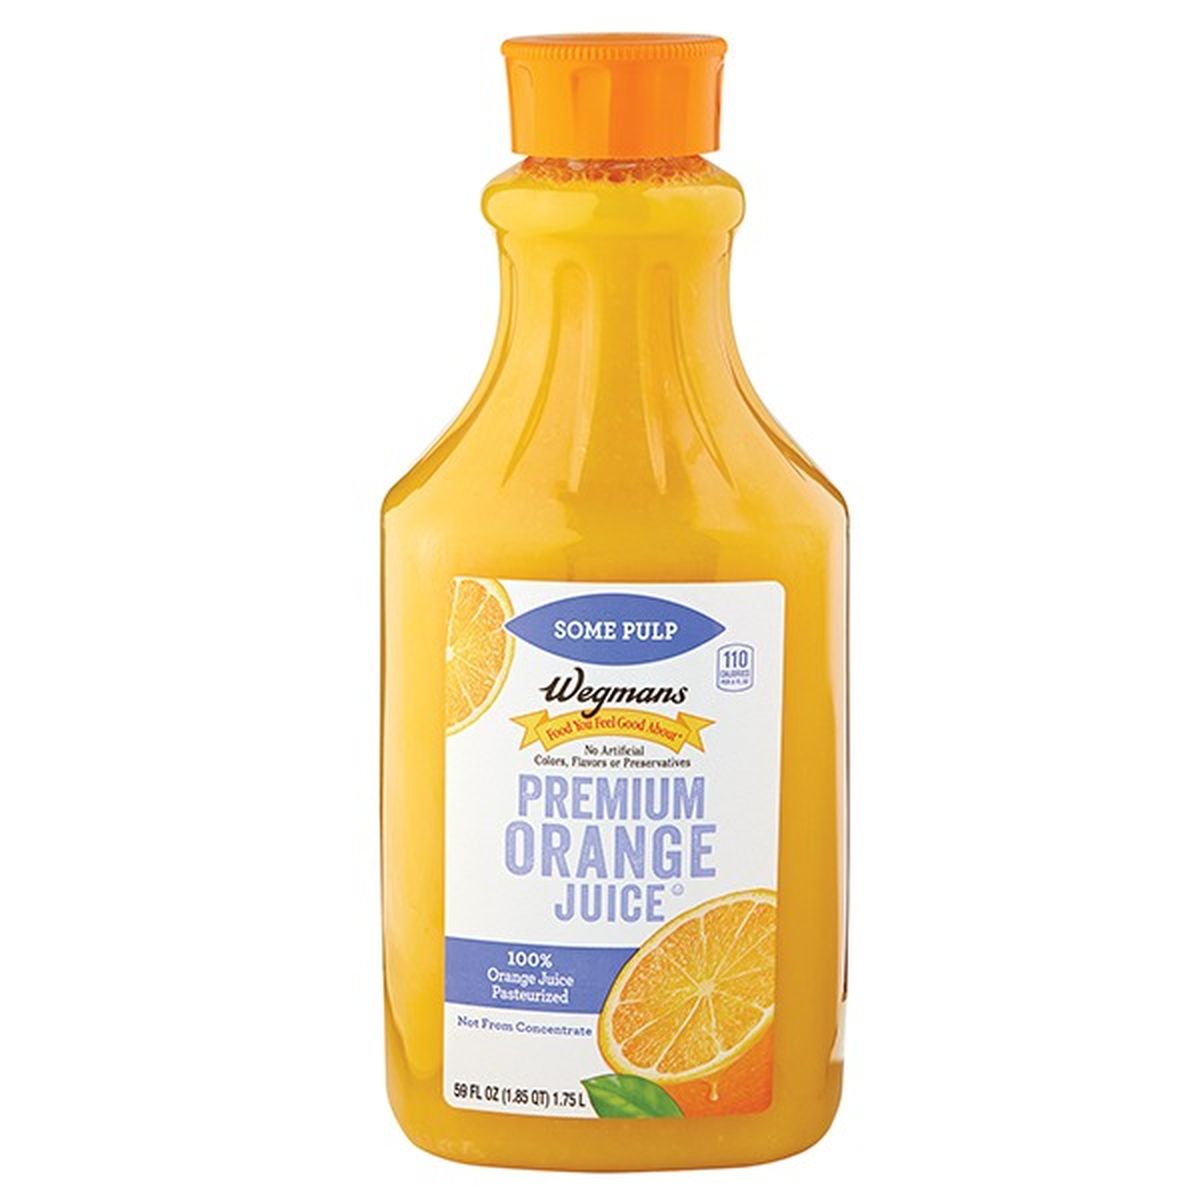 Calories in Wegmans Premium Orange Juice, Some Pulp